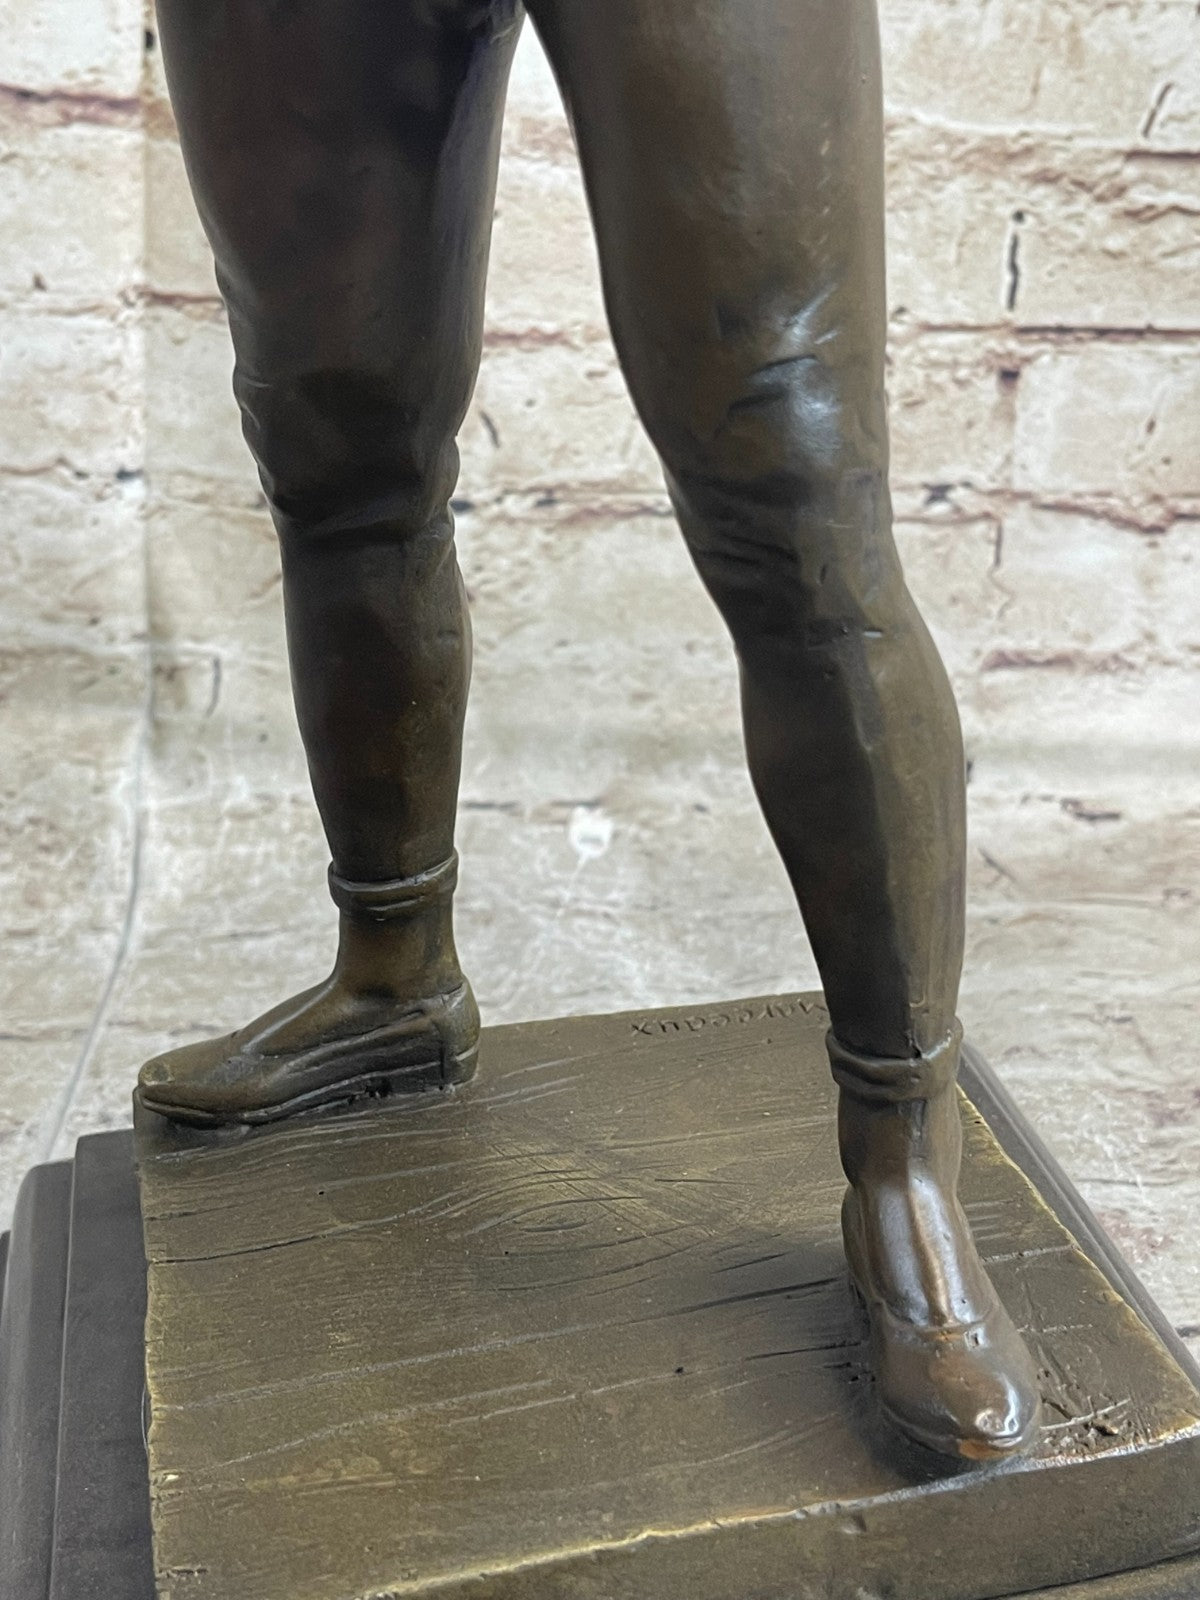 Handcrafted bronze sculpture SALE Joker Jester Harlequin Saint-Marceaux De Rene